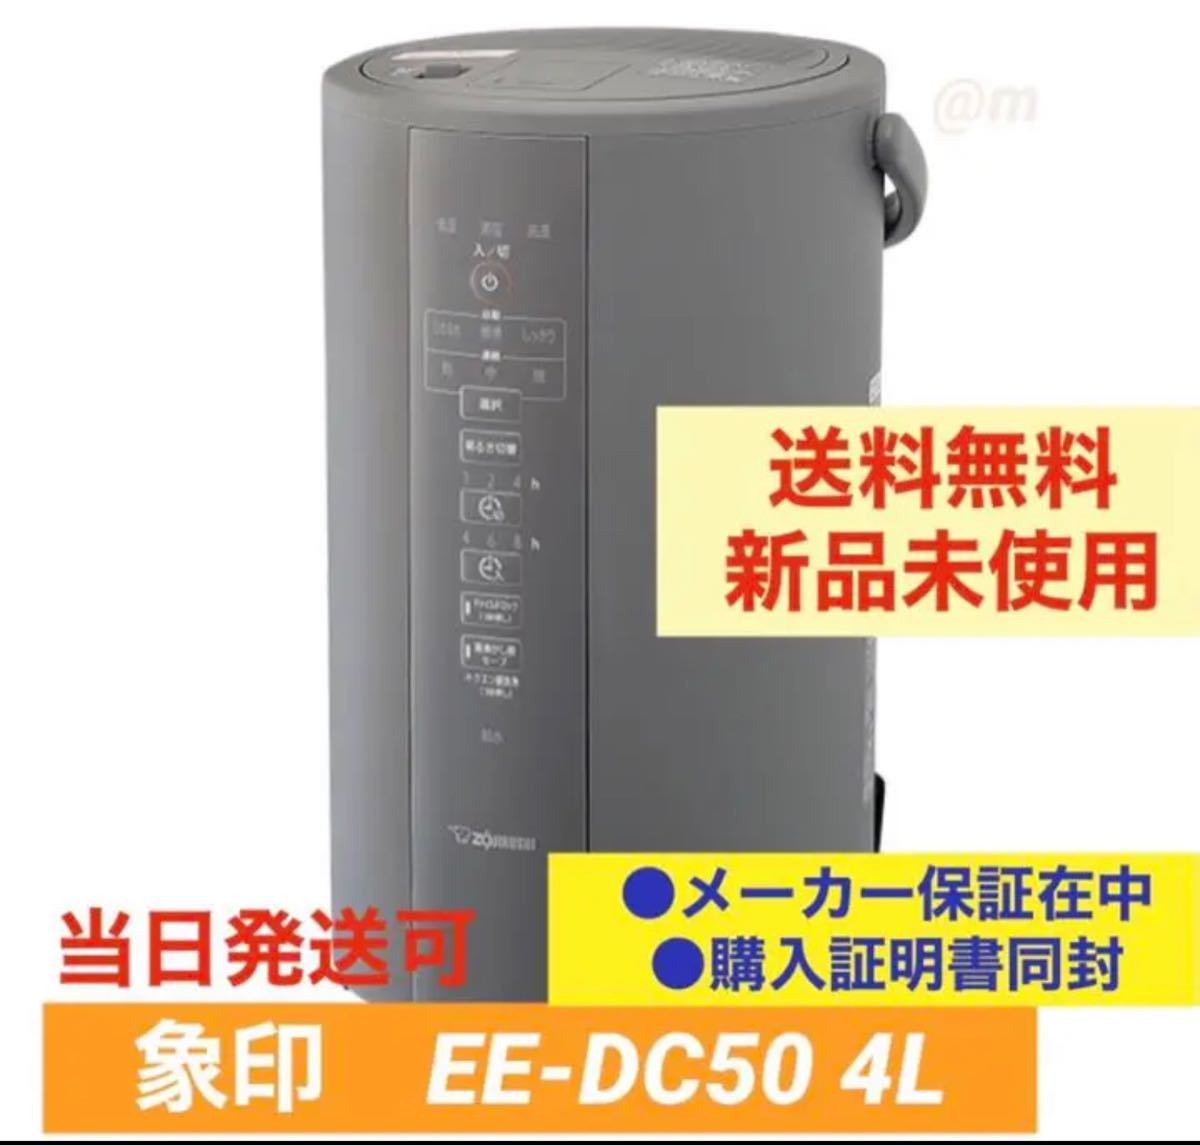 新品 未使用品 象印 EE-DC50-WA スチーム式加湿器 4.0L - rehda.com